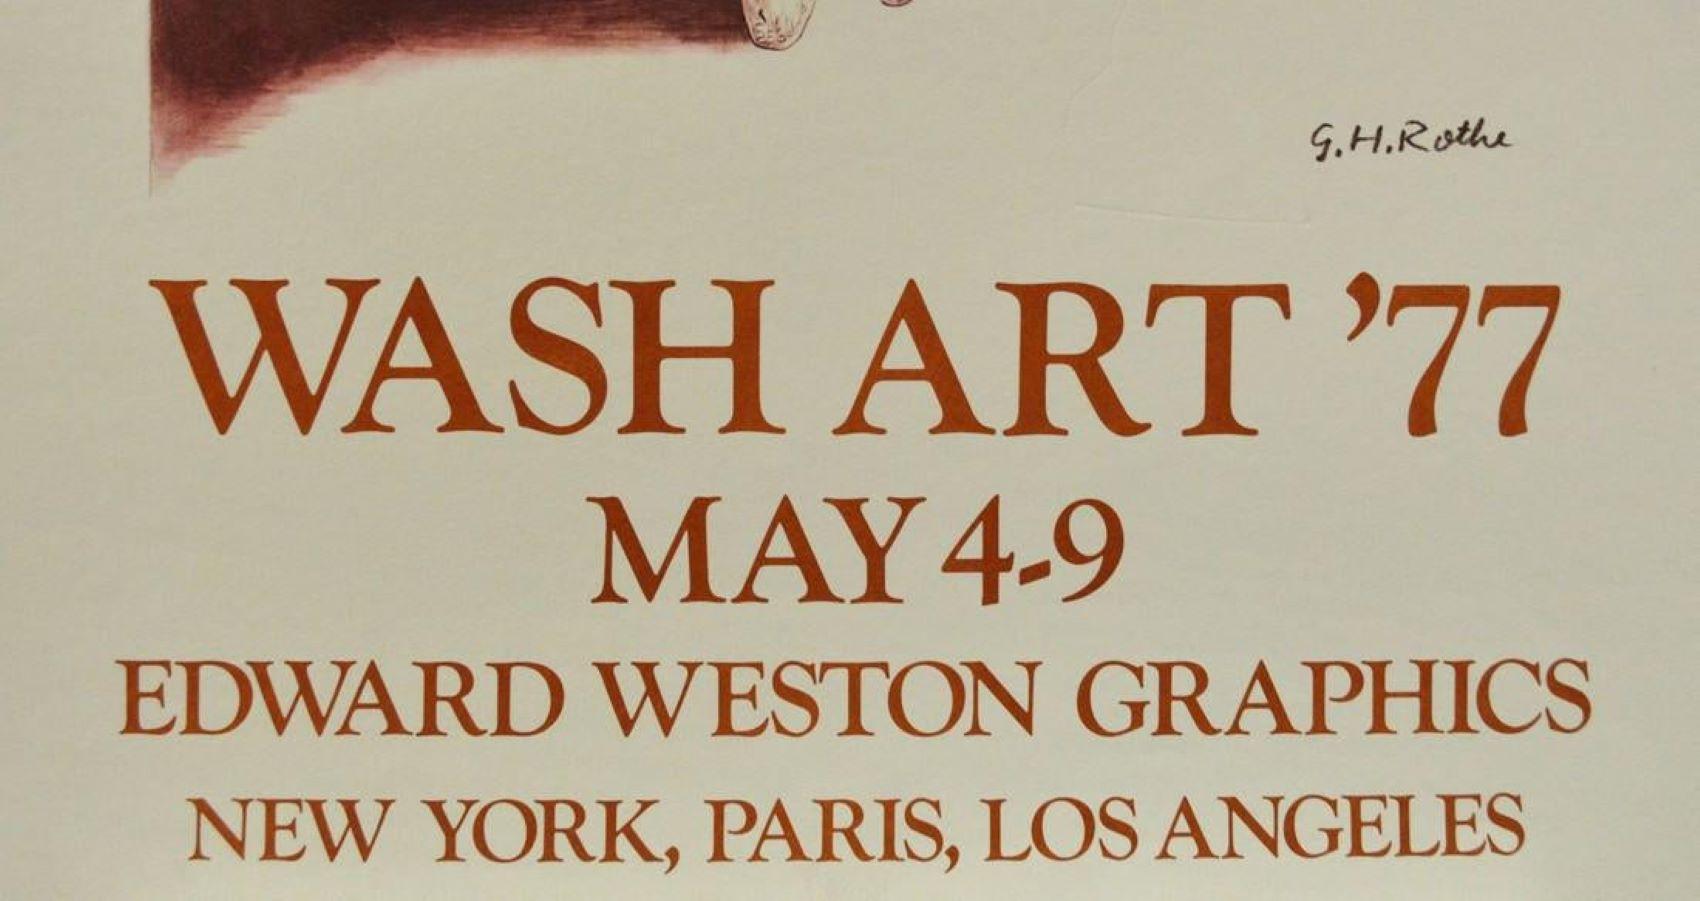 Wash Art '77, May 4-9, Edward Weston Graphics- New York, Paris, Los Angeles - Print by G.H. Rothe